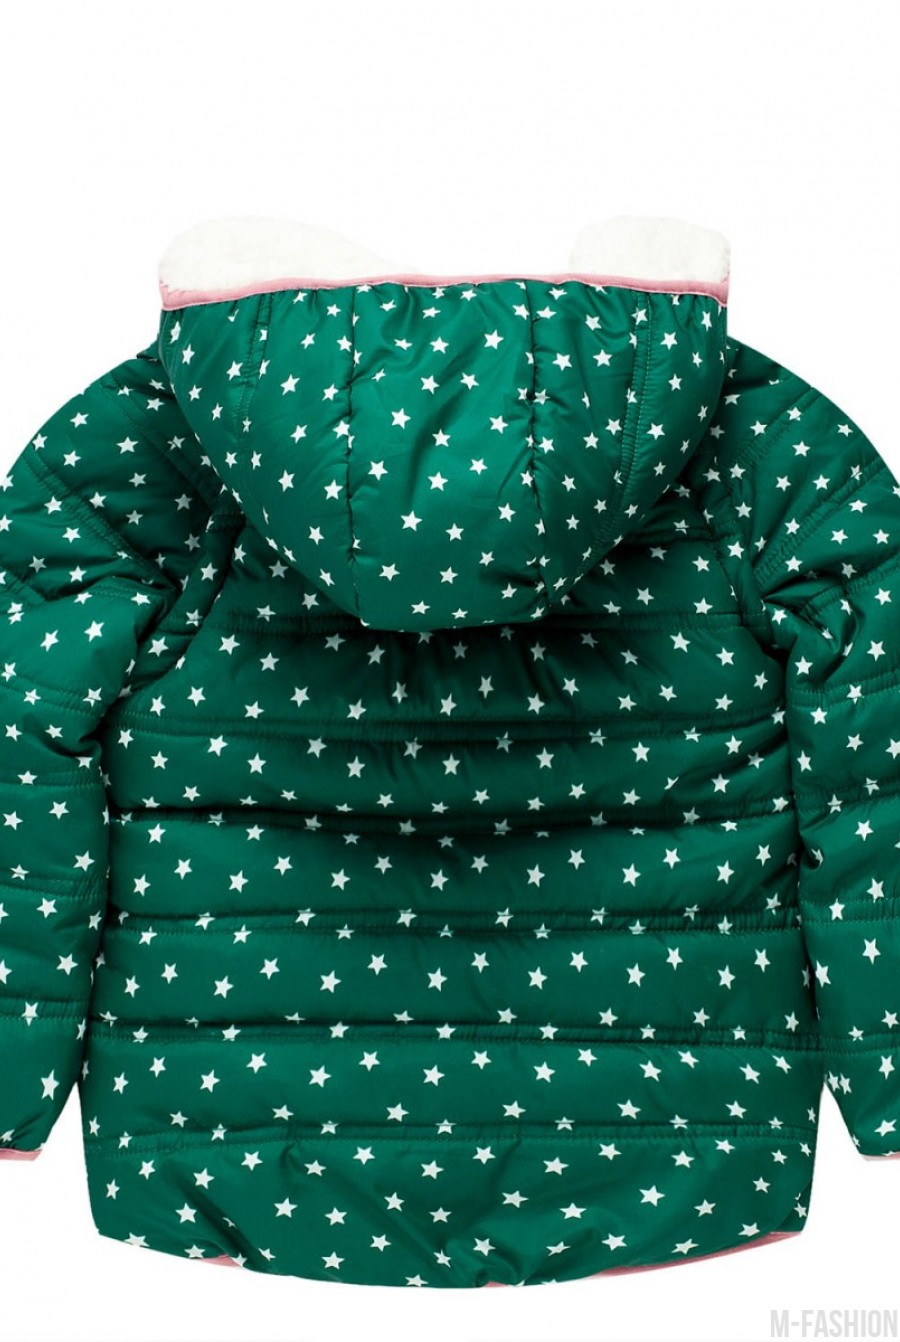 Демисезонная зеленая куртка с подкладкой на флисе, капюшоном и карманами- Фото 2